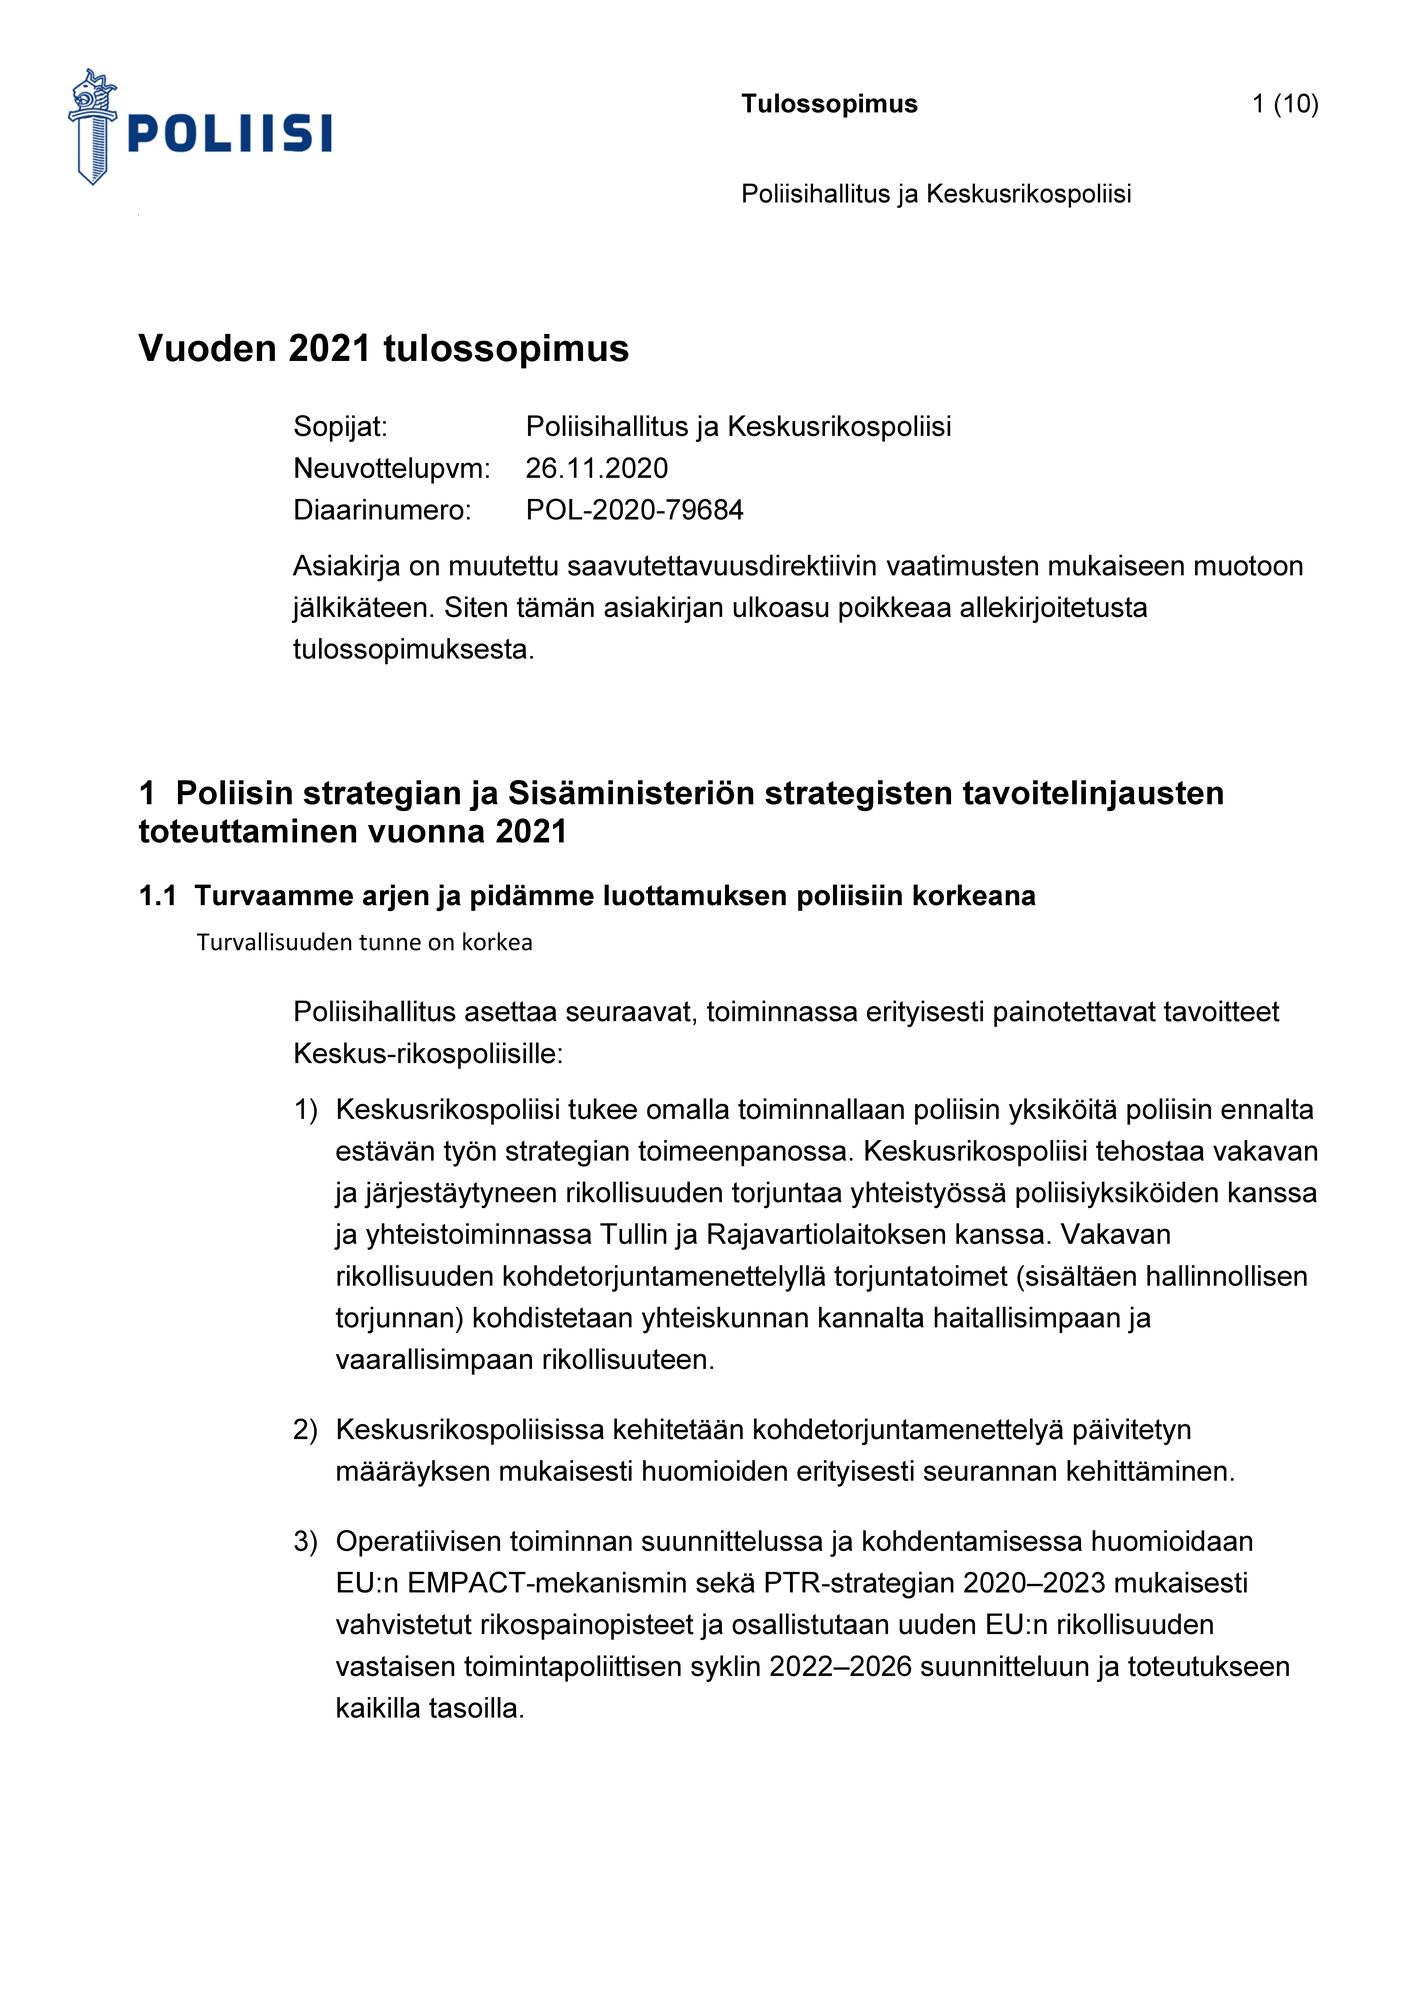 Palantirin nimi on vilahdellut useissa viranomaisten papereissa, mutta yhtiön tuotteiden käyttöä Suomessa ei ole vahvistettu. © Poliisi